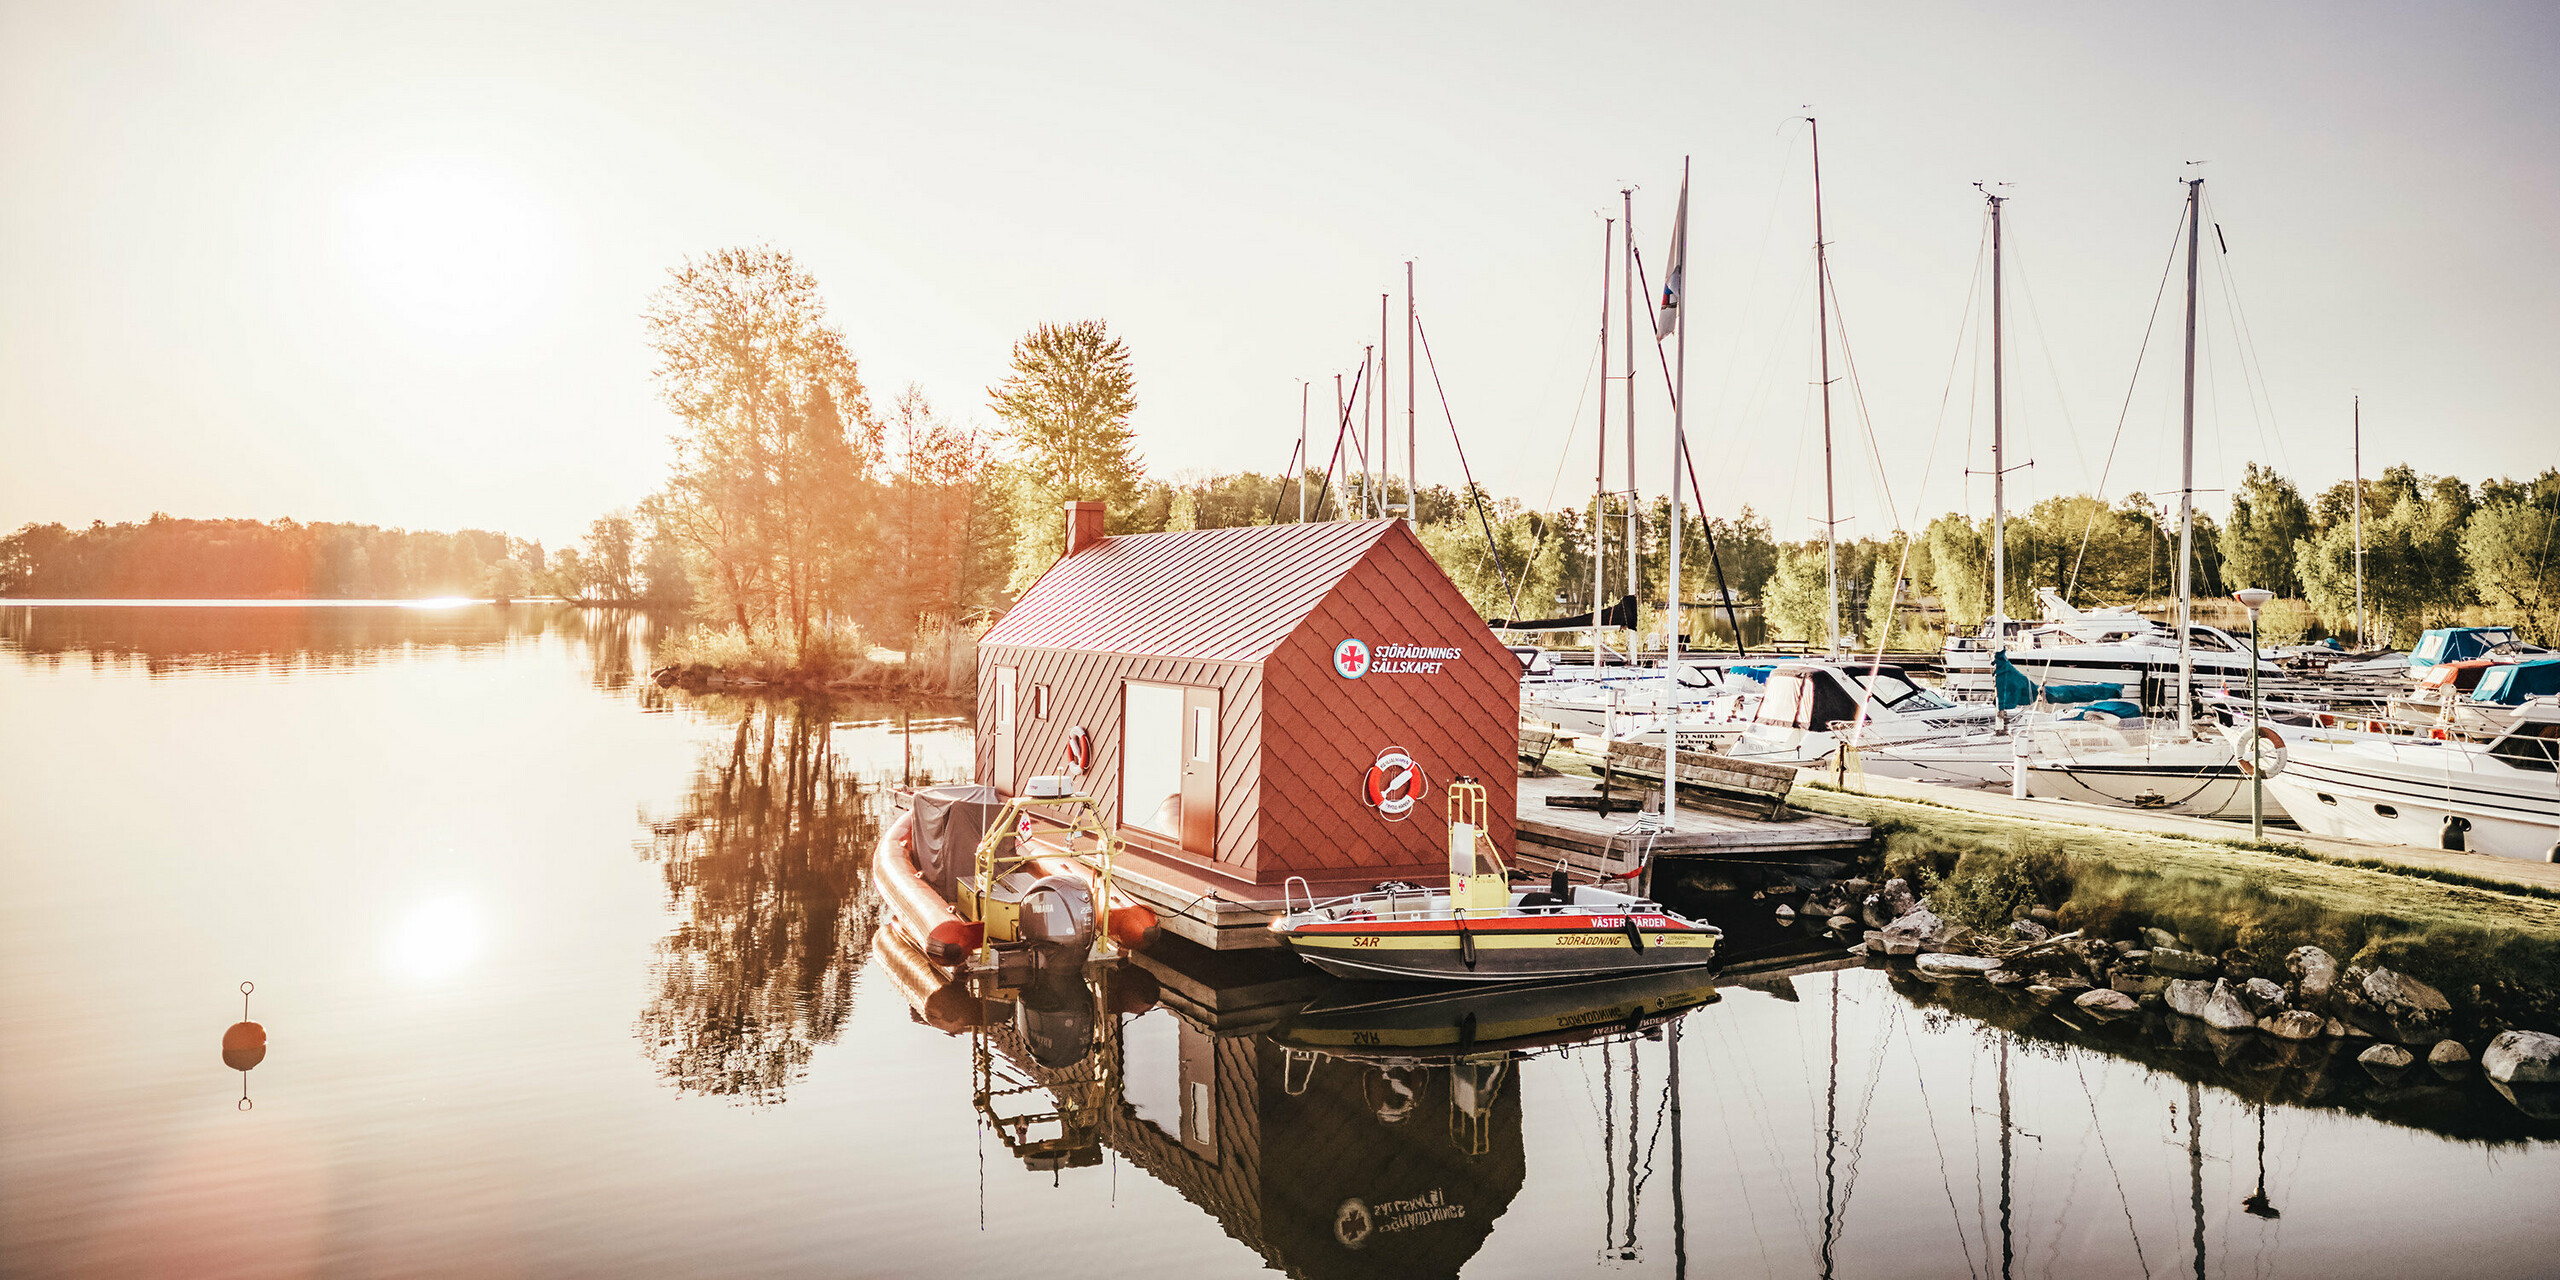 Časně zrána u jezera Hjälmaren ve Švédsku, kde plovoucí dům vodní záchranné stanice s tmavě červeným hliníkovým pláštěm vyrobeným z PREFA hliníkových šablon 29×29 tiše leží na vodě. Vycházející slunce za budovou zalévá scénu měkkým světlem, které se odráží ve stojaté vodě spolu s nádražním domem a záchrannými čluny. V pozadí jsou seřazeny stěžně plachetnic kotvících v přístavu a dotvářejí obraz poklidného útočiště, které je zároveň základnou pro záchranu života.